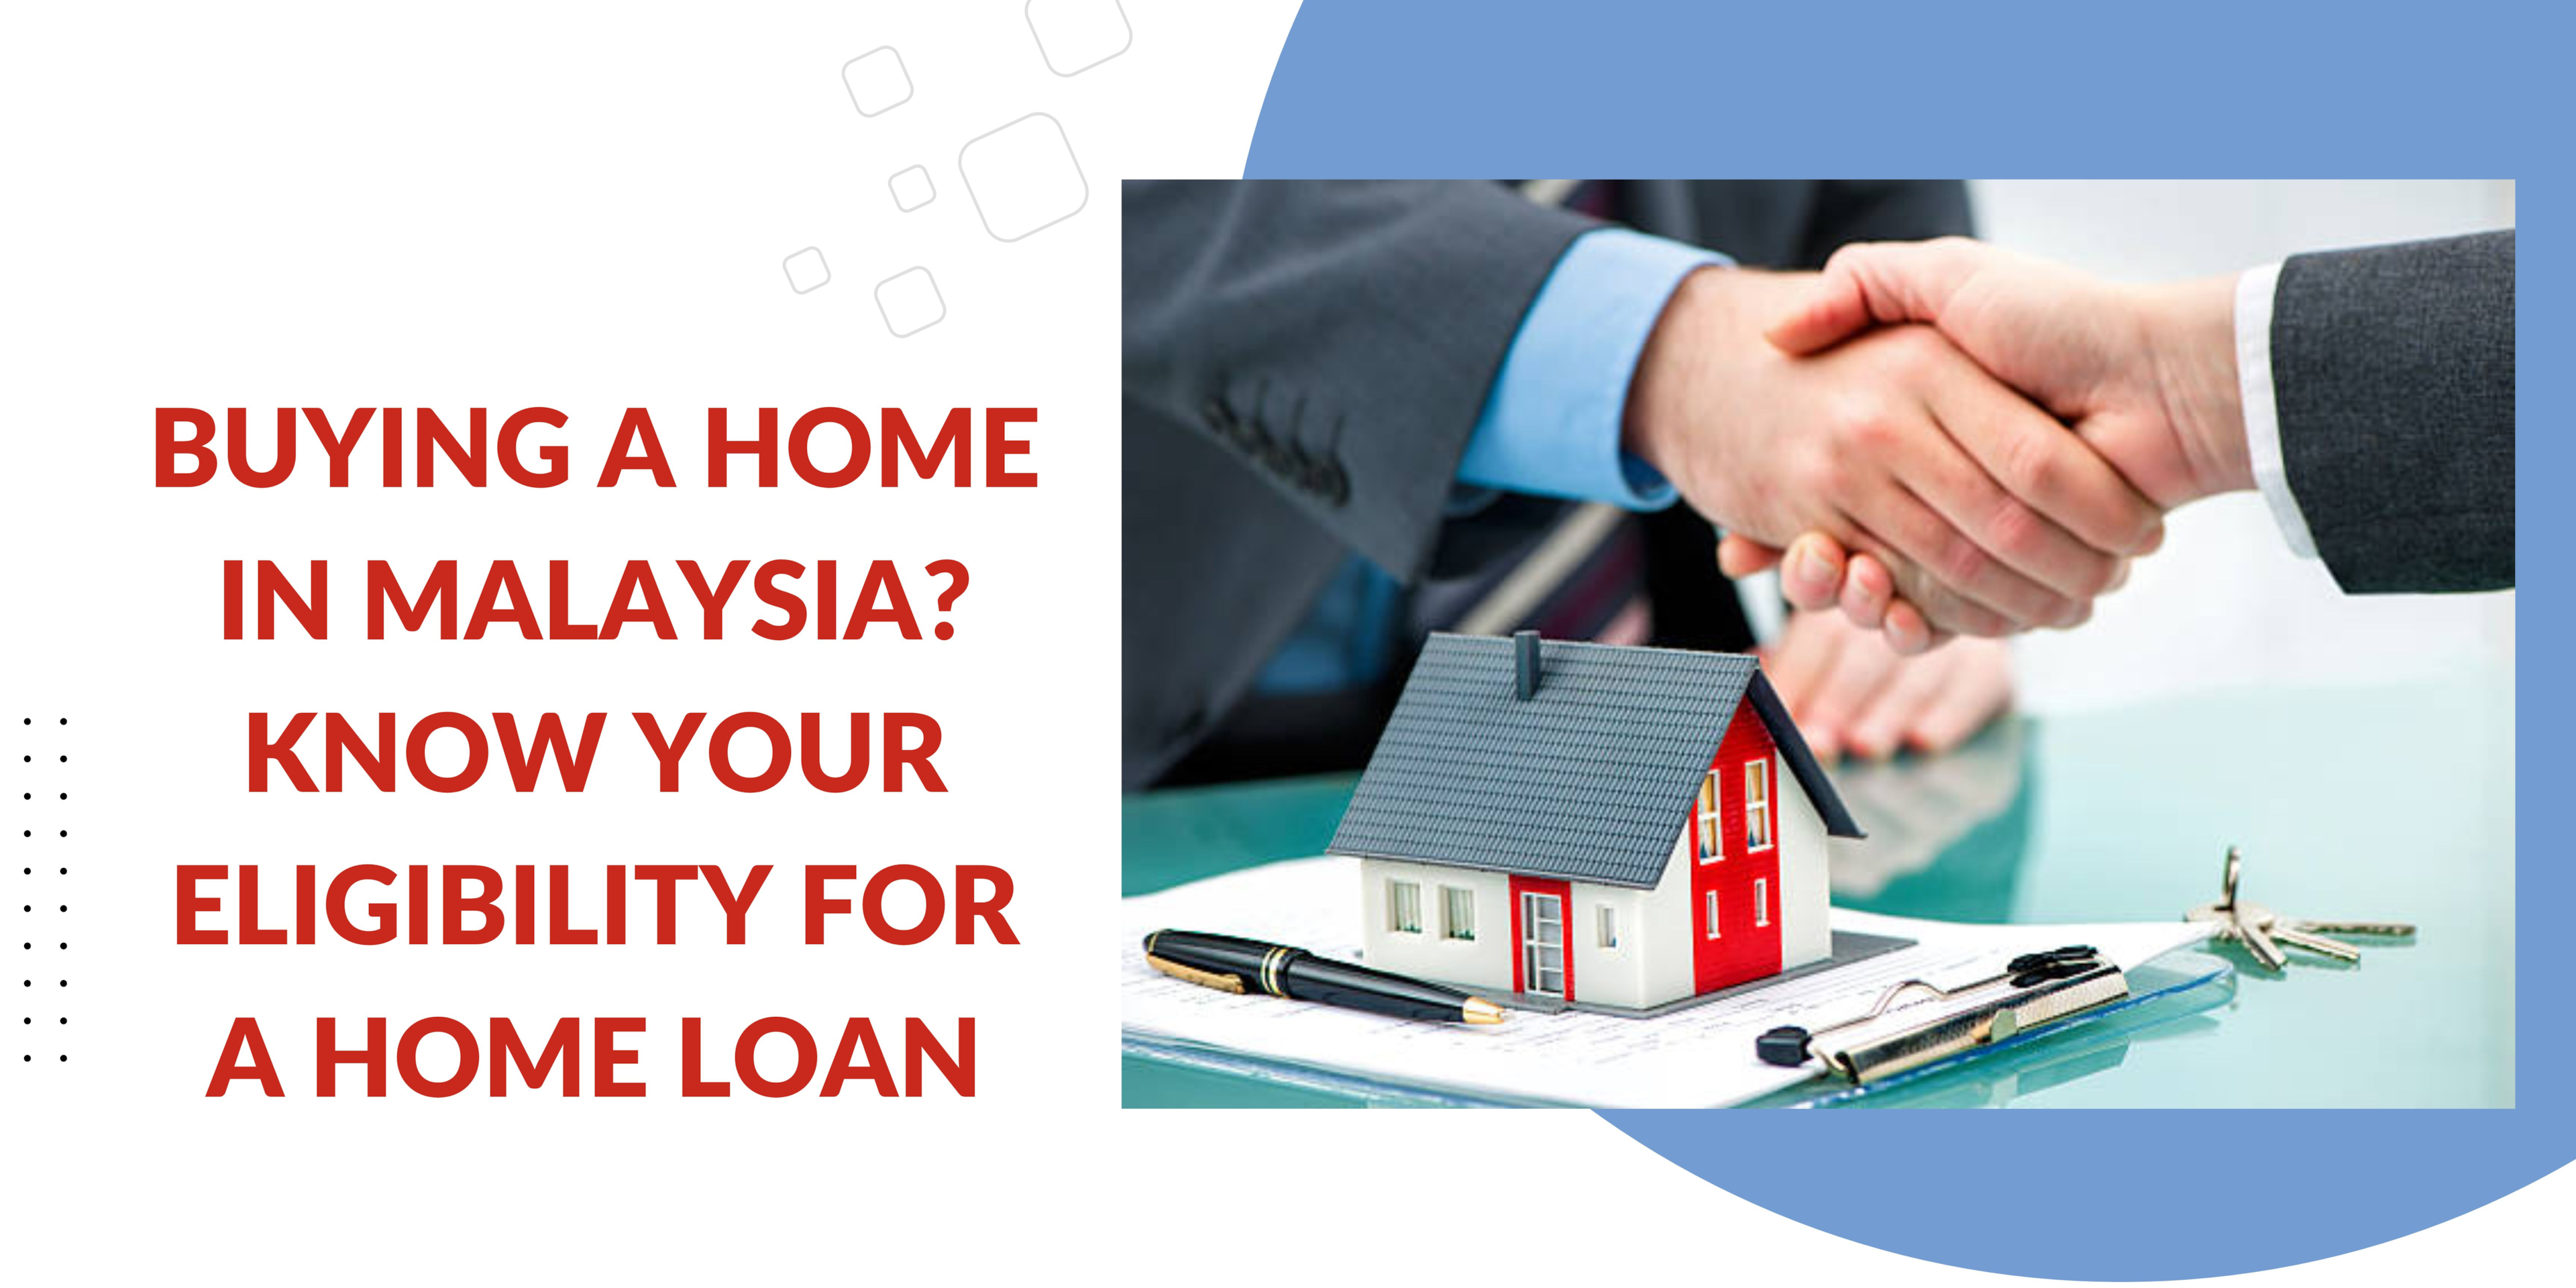 在马来西亚买房？ 了解您的房屋贷款资格